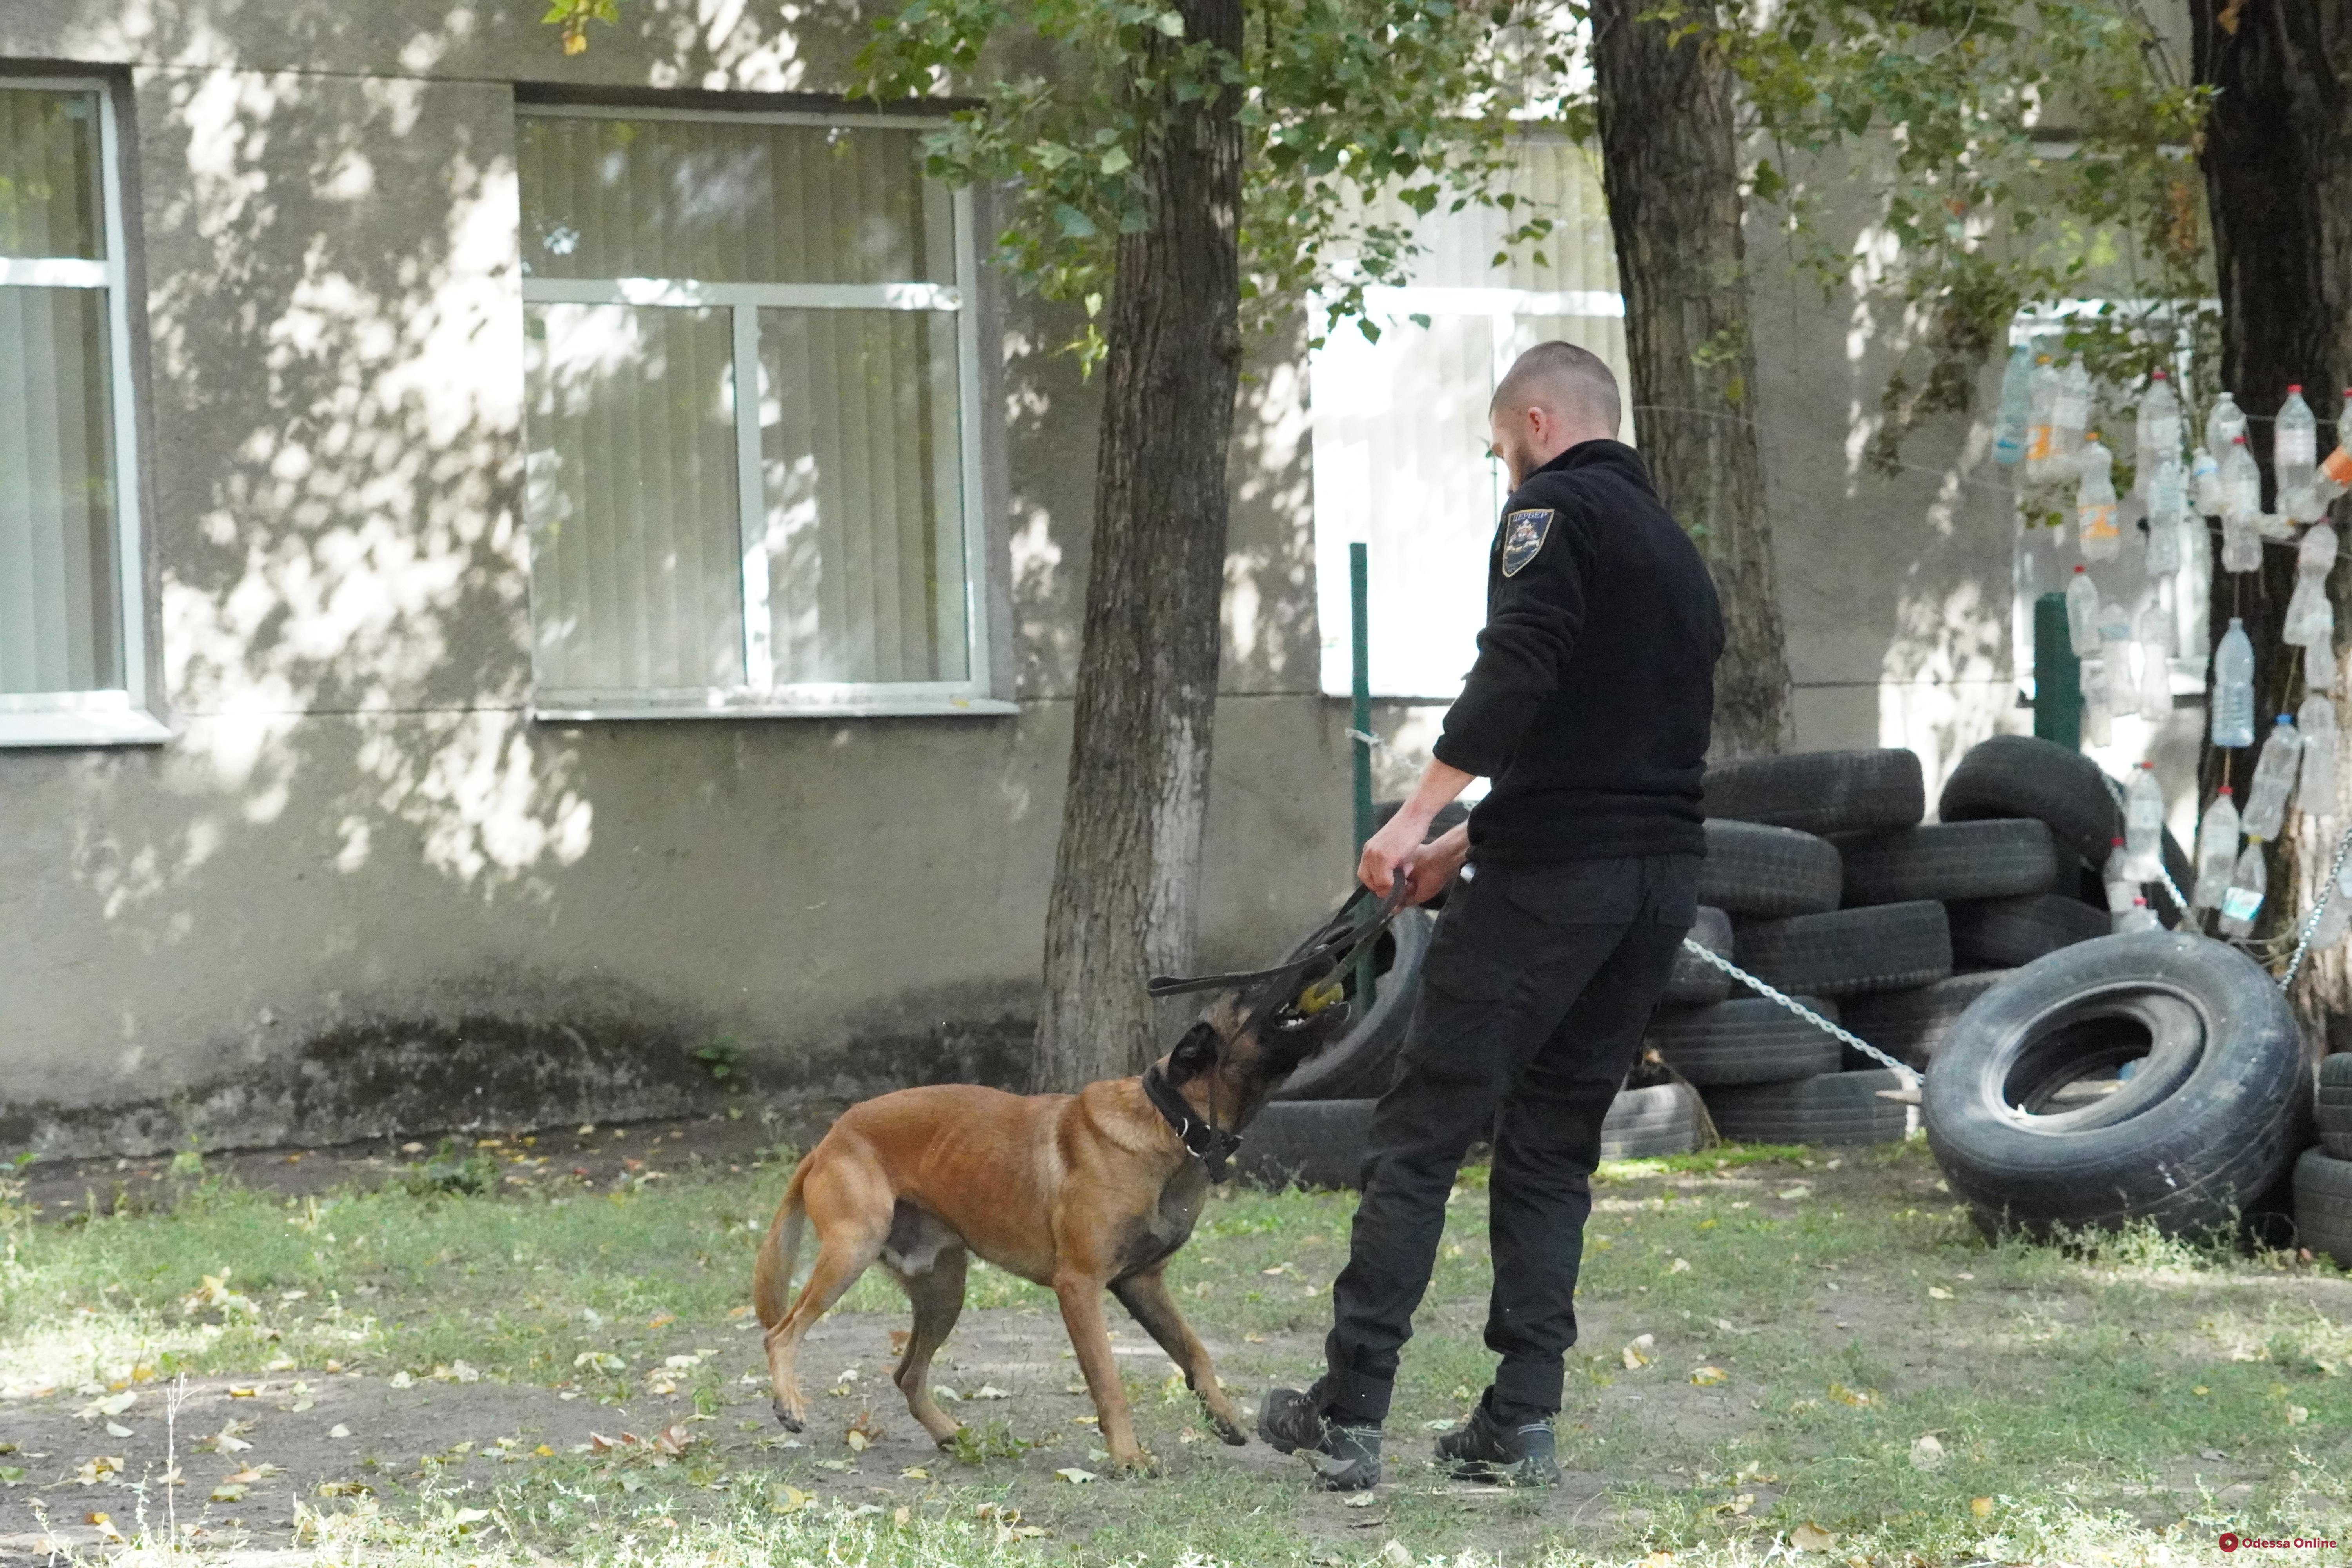 Распознать кокаин, тротил и спасти человека: в Одессе показали, как тренируют служебных собак